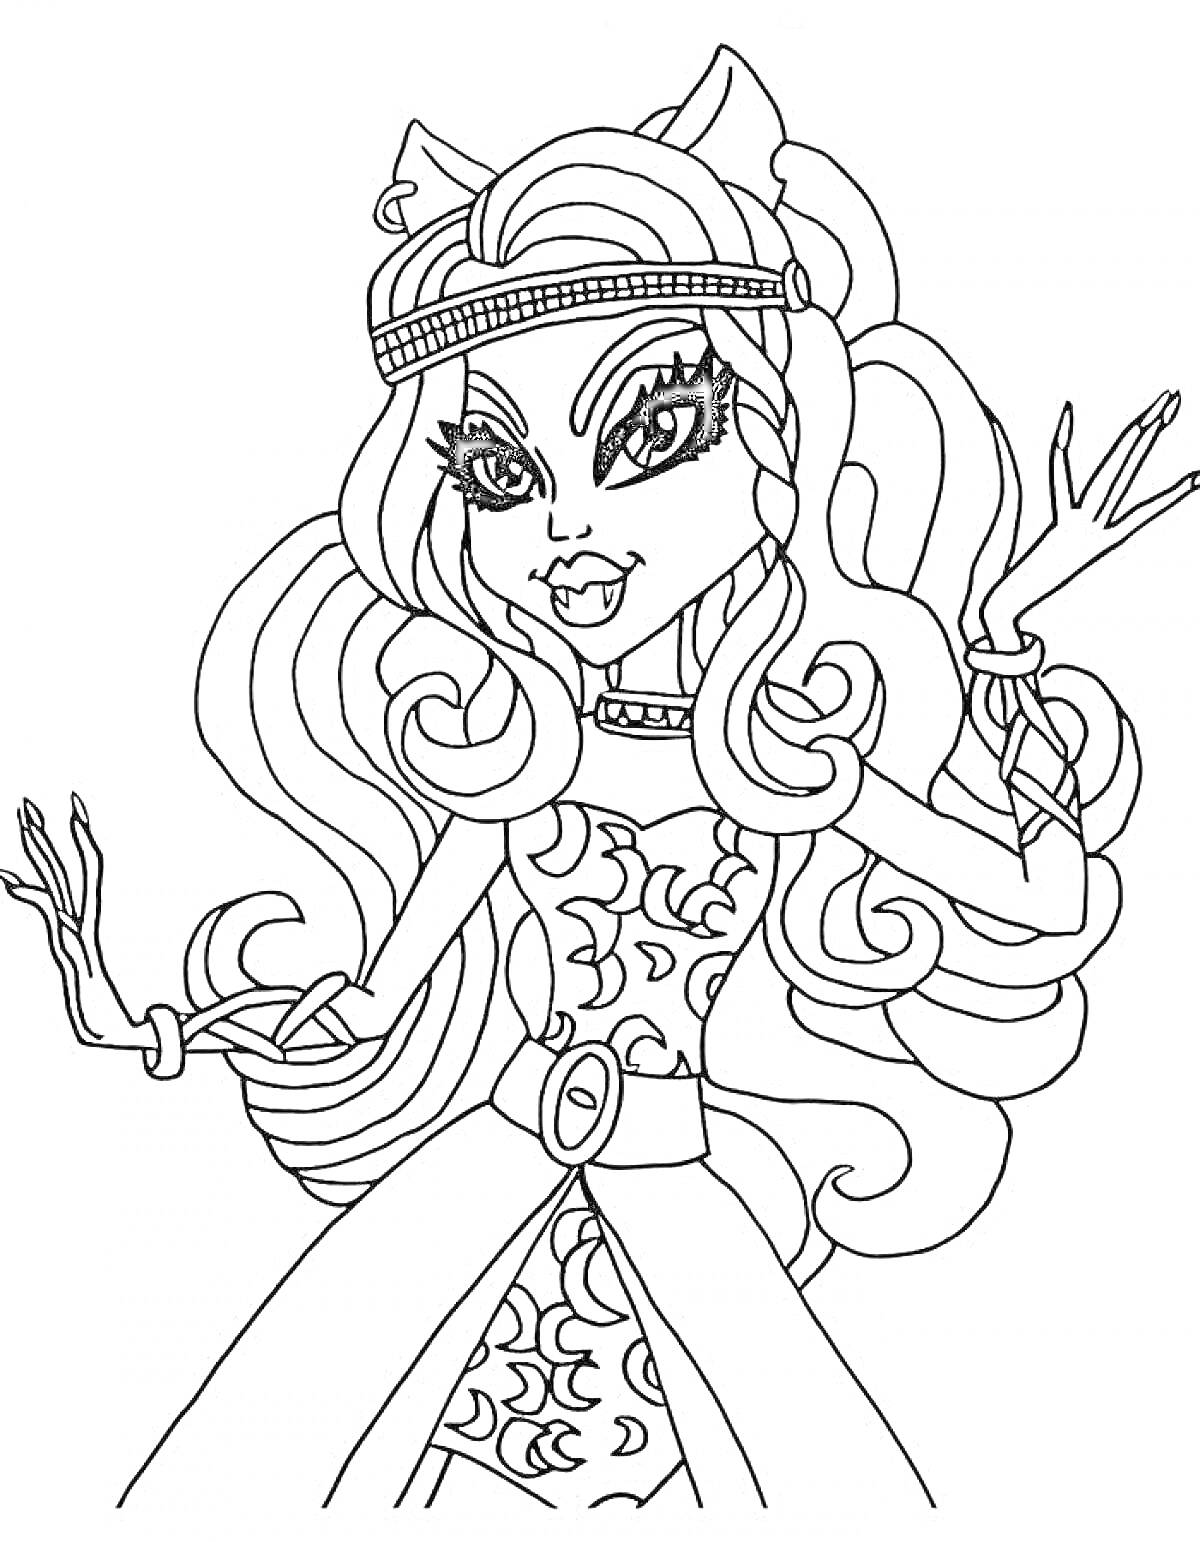 РаскраскаДевочка-монстр с длинными волнистыми волосами в платье с узорами и поясом, с диадемой и кошачьими ушками